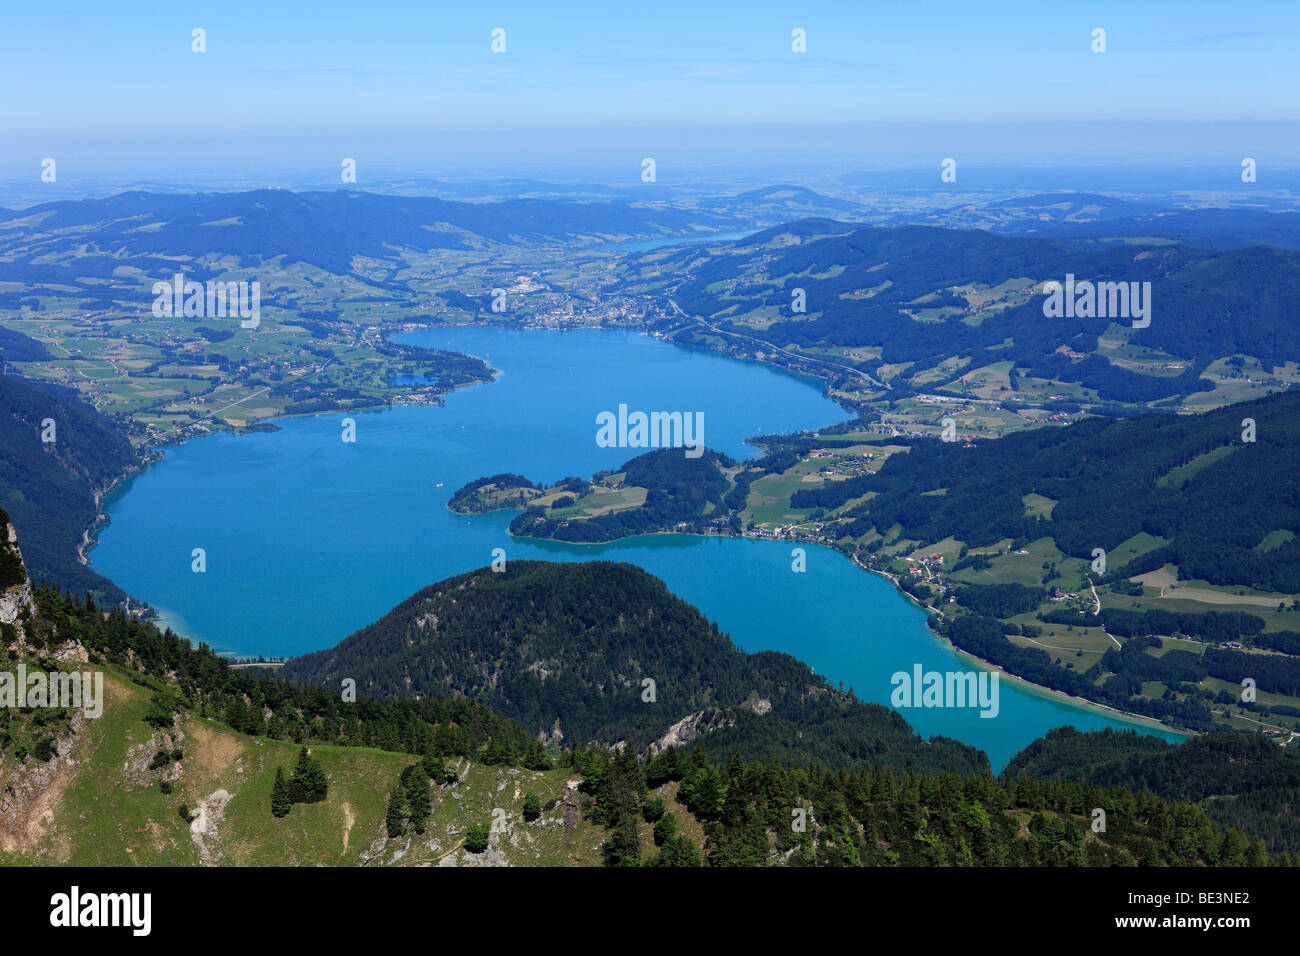 Mondsee lake, view from Schafberg mountain, Salzkammergut region, Upper Austria, Salzburg Land state, Salzburg, Austria, Europe Stock Photo